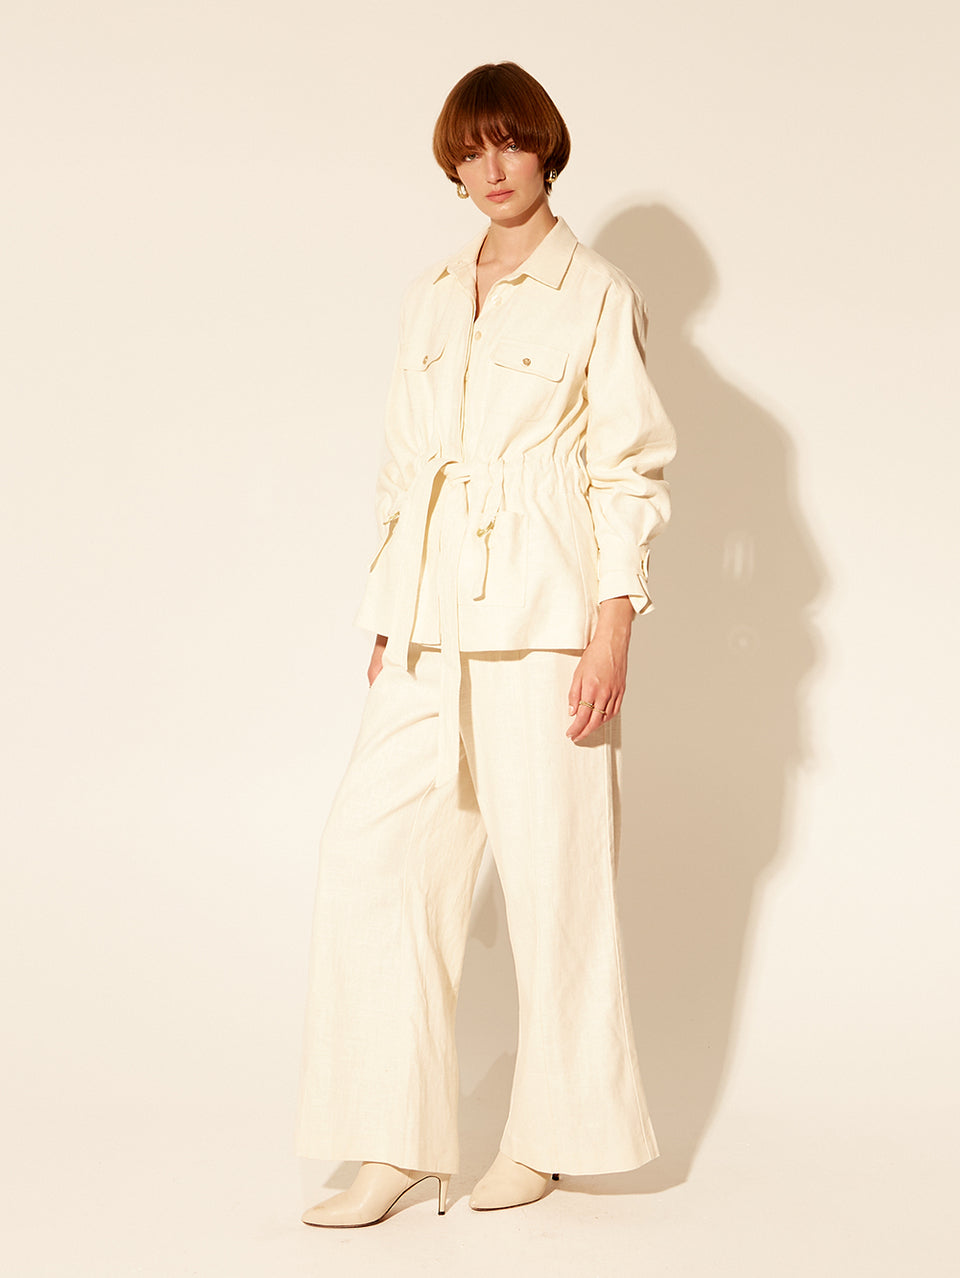 Oaklee Jacket Cream KIVARI | Model wears cream jacket side view